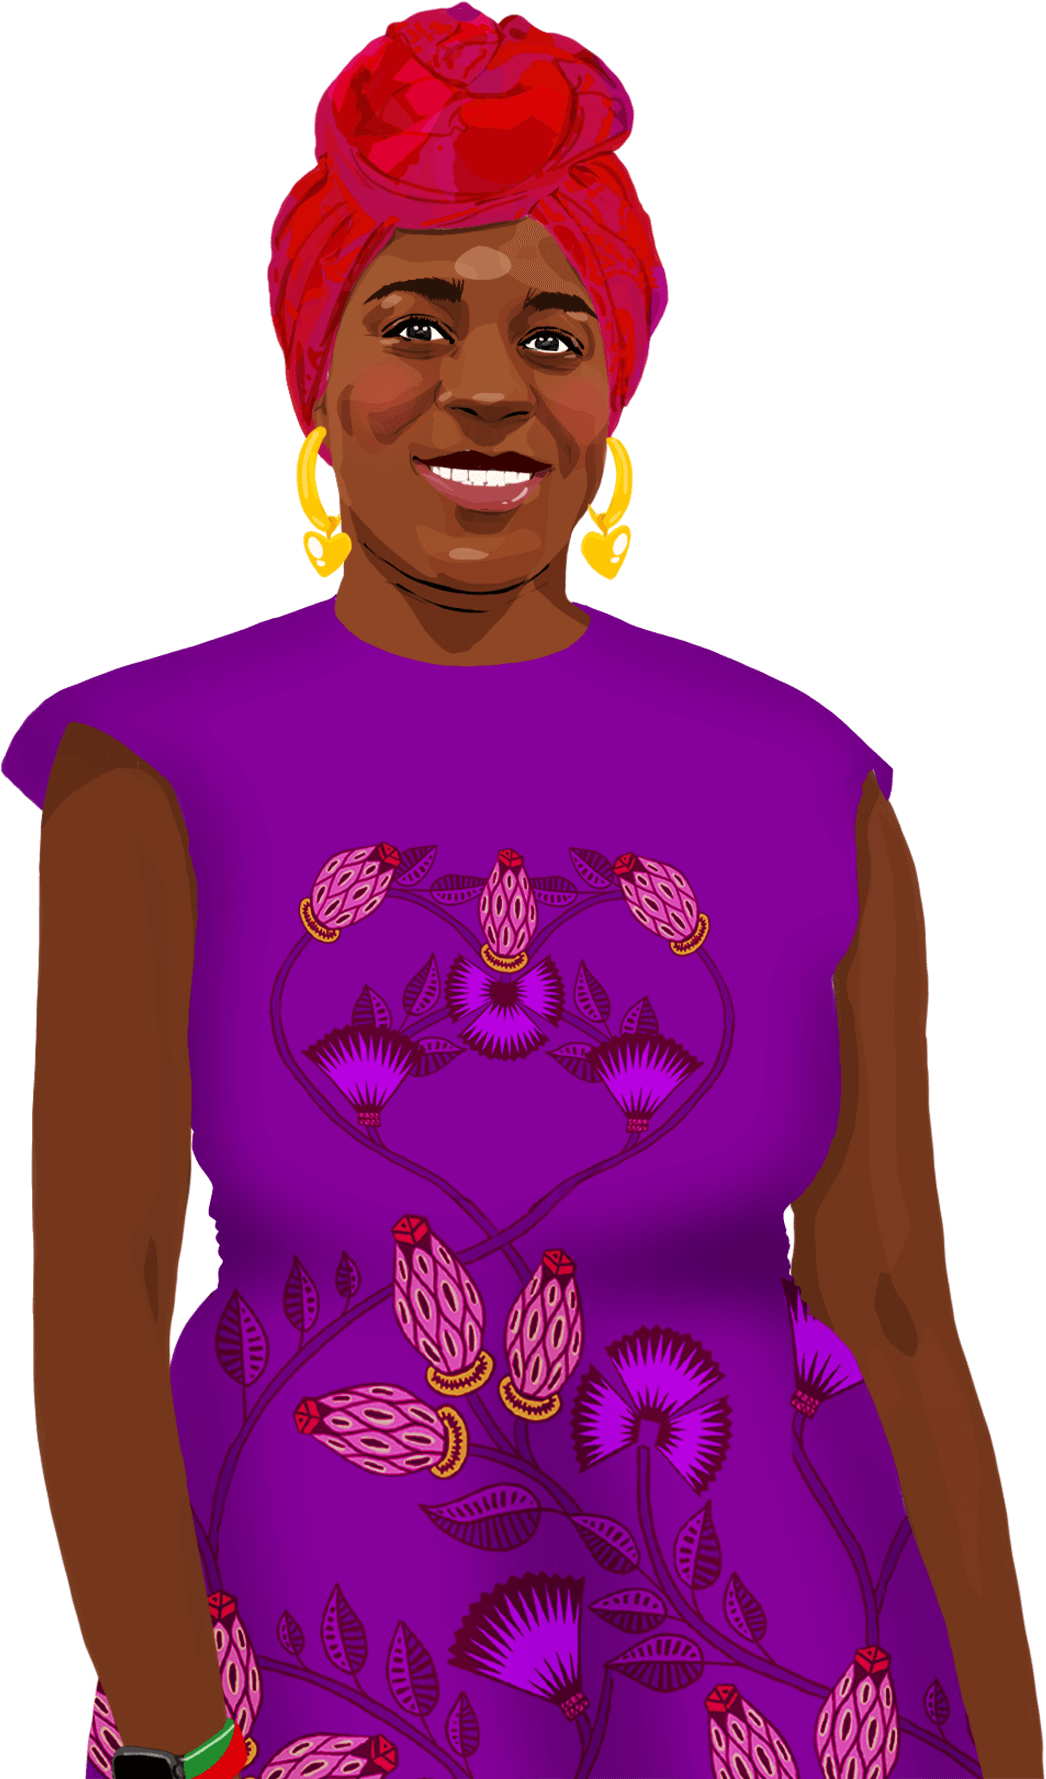 Ilustrovaný portrét Cynthie, která se usmívá a dívá se na čtenáře.